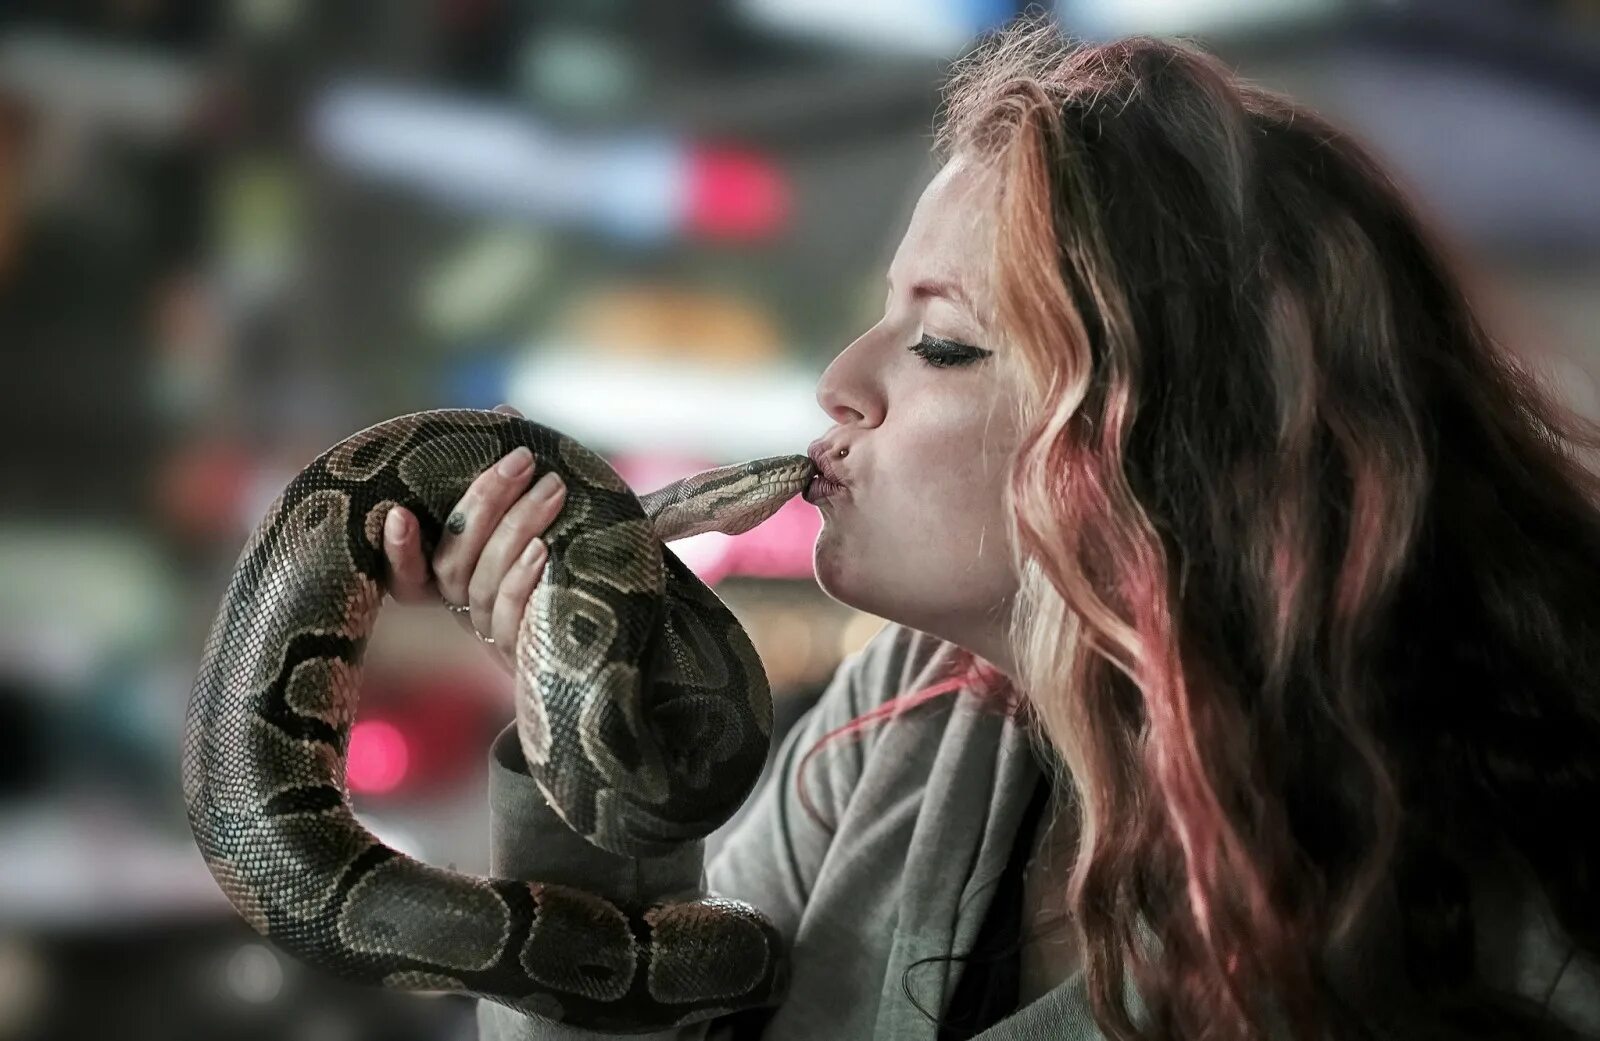 Змея изо рта. Девушка змея. Фотосессия со змеями. Девушка целует змею. Человек со змеями.